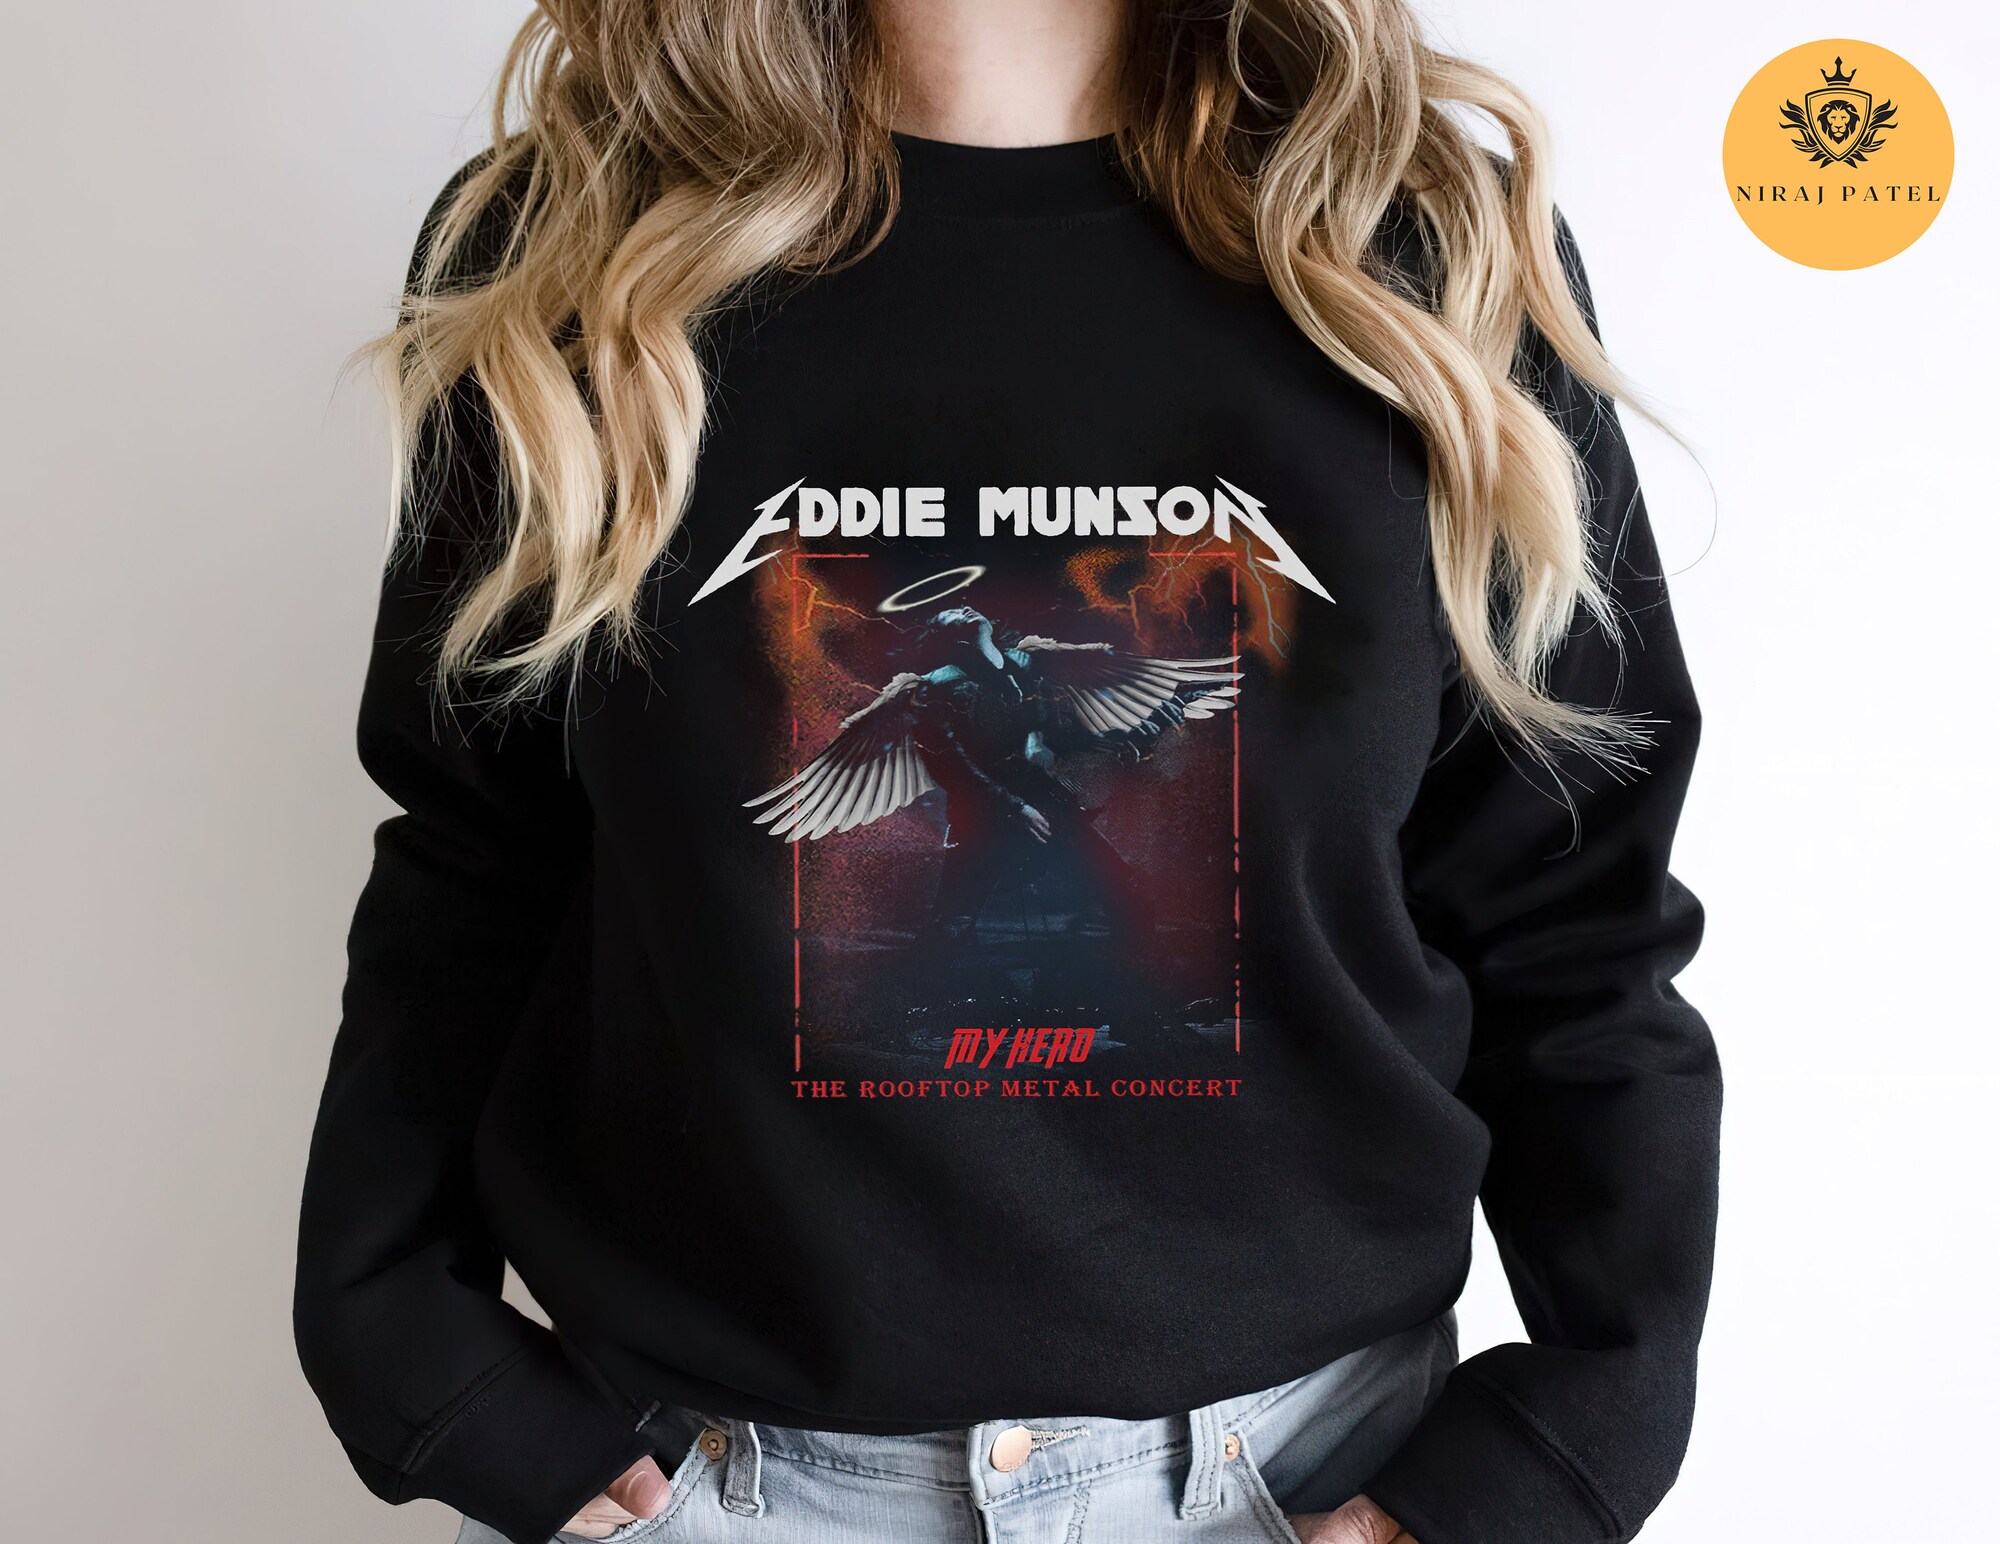 Discover Eddie Munson Play Guitar Shirt, Eddie Guitar Shirt, Munson Shirt, Eddie Munson Vintage Bootleg 90s Inspired Tee, Joseph Quinn Shirt